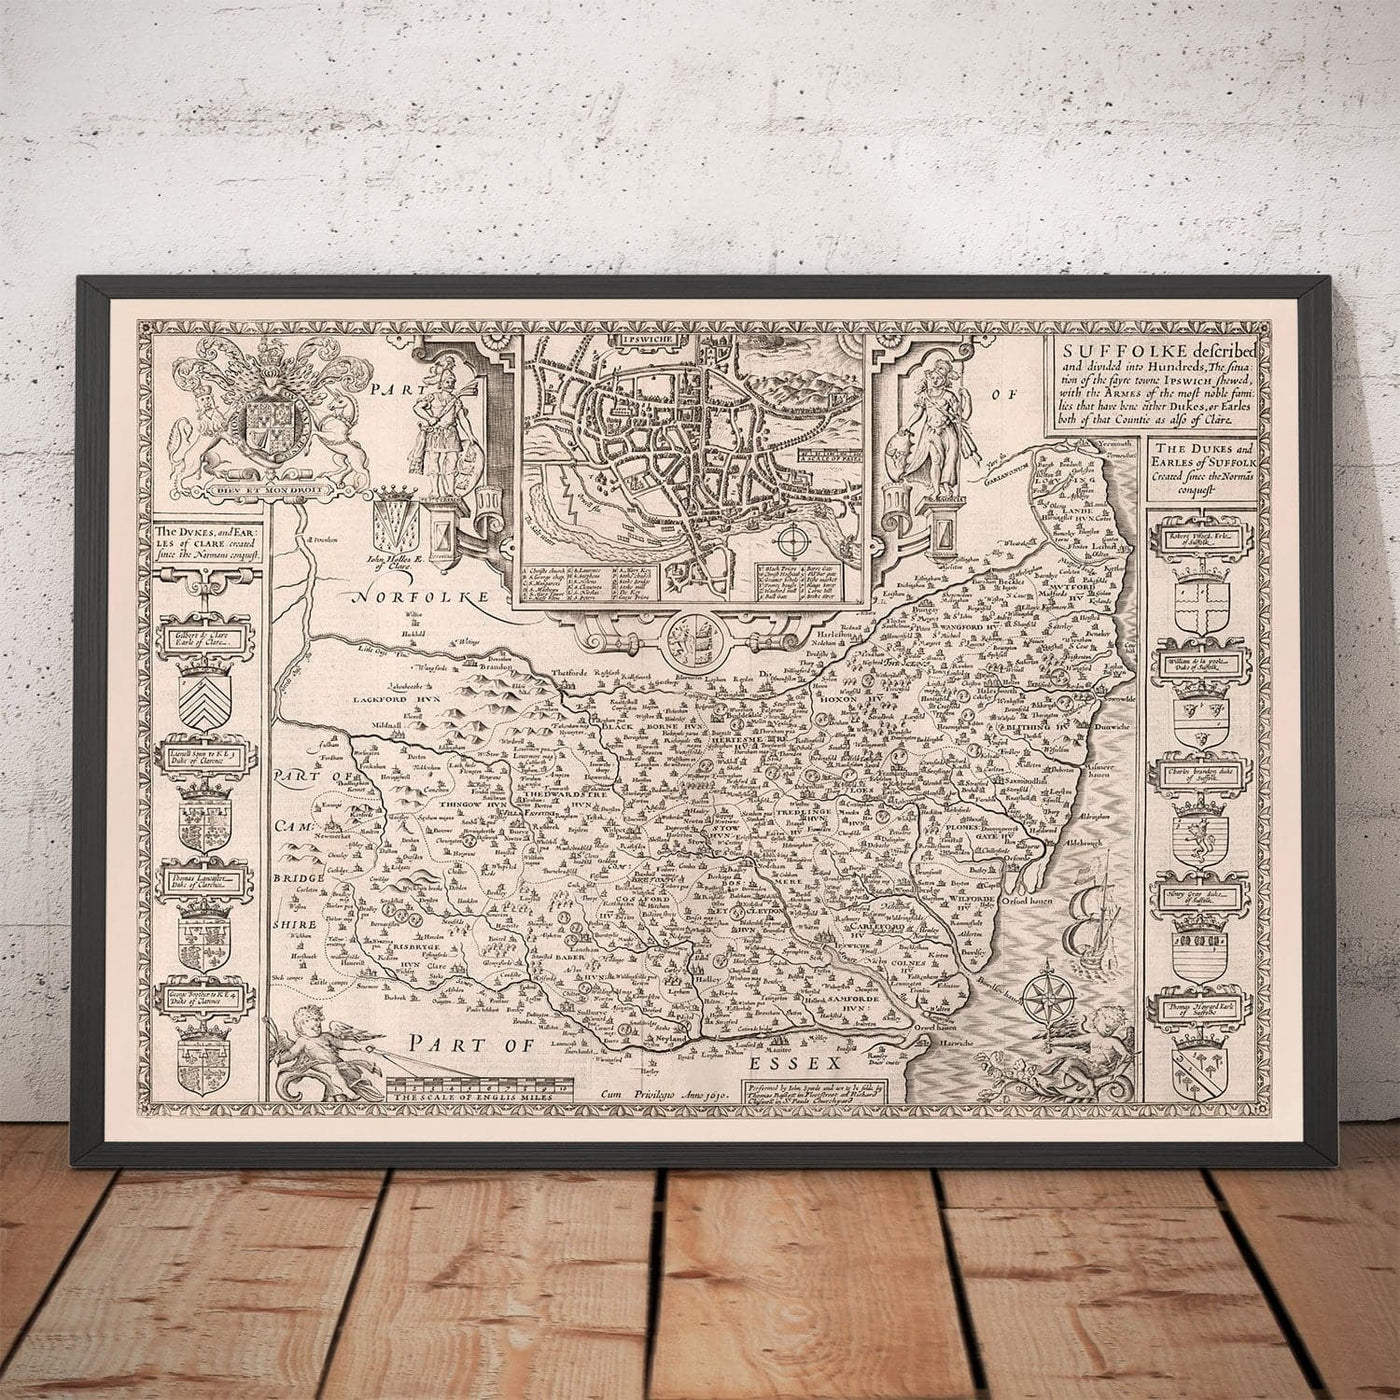 Alte monochrome Karte von Suffolk, 1611 nach Geschwindigkeit - Ipswich, Tiefstoft, Bury St. Edmunds, Haverhill, Felixstowe